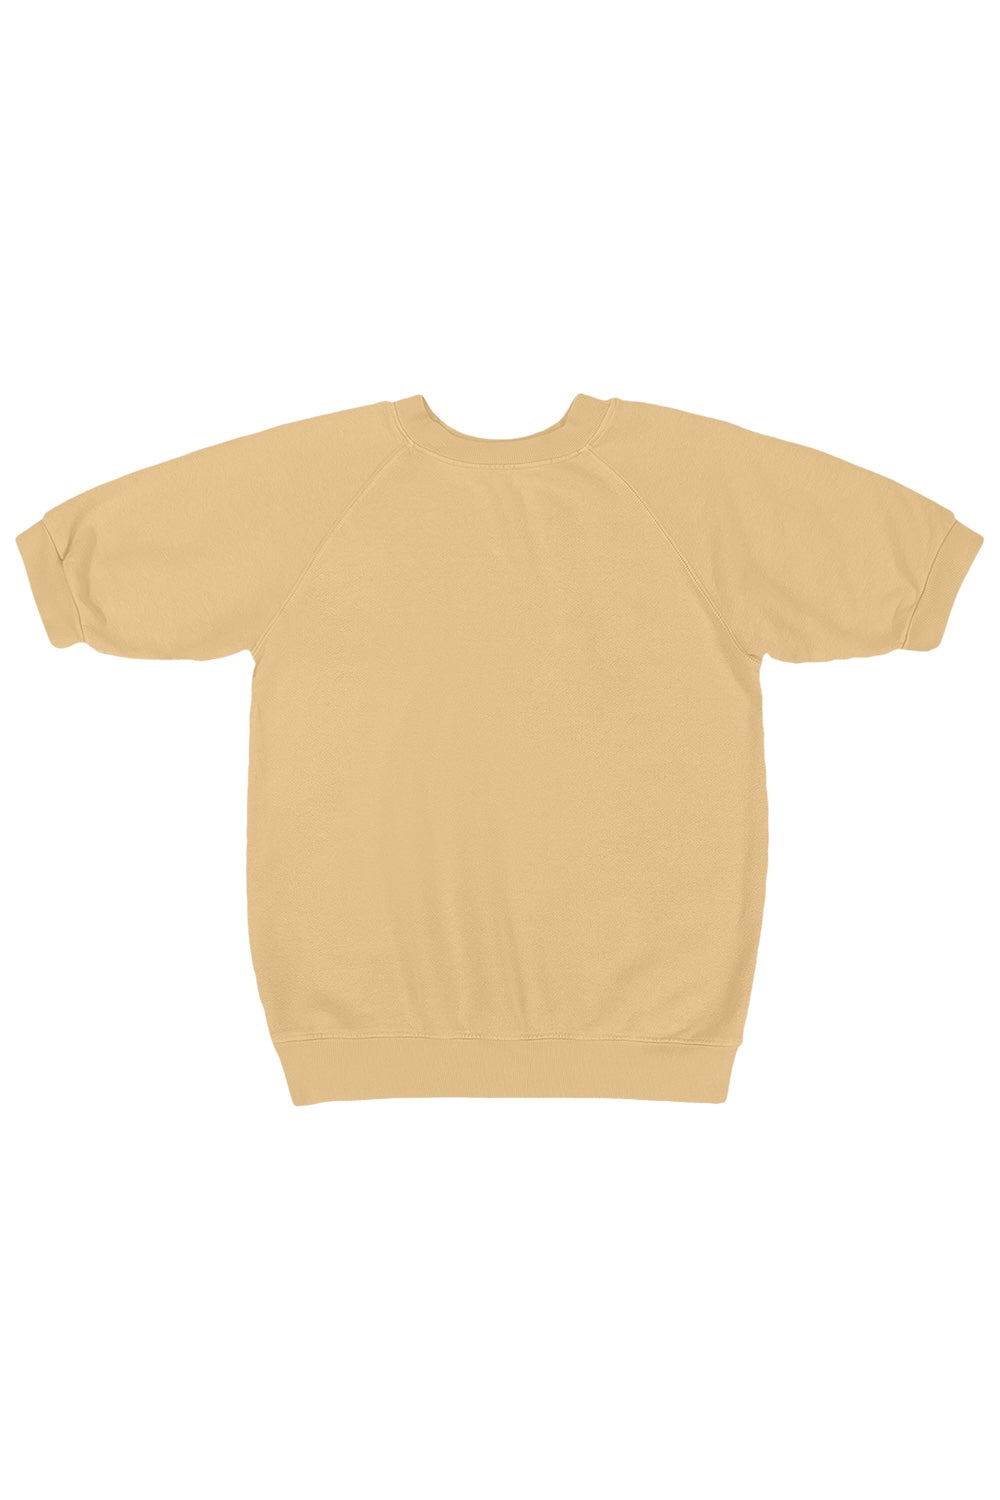 Short Sleeve Raglan Fleece Sweatshirt | Jungmaven Hemp Clothing & Accessories / Color: Oat Milk